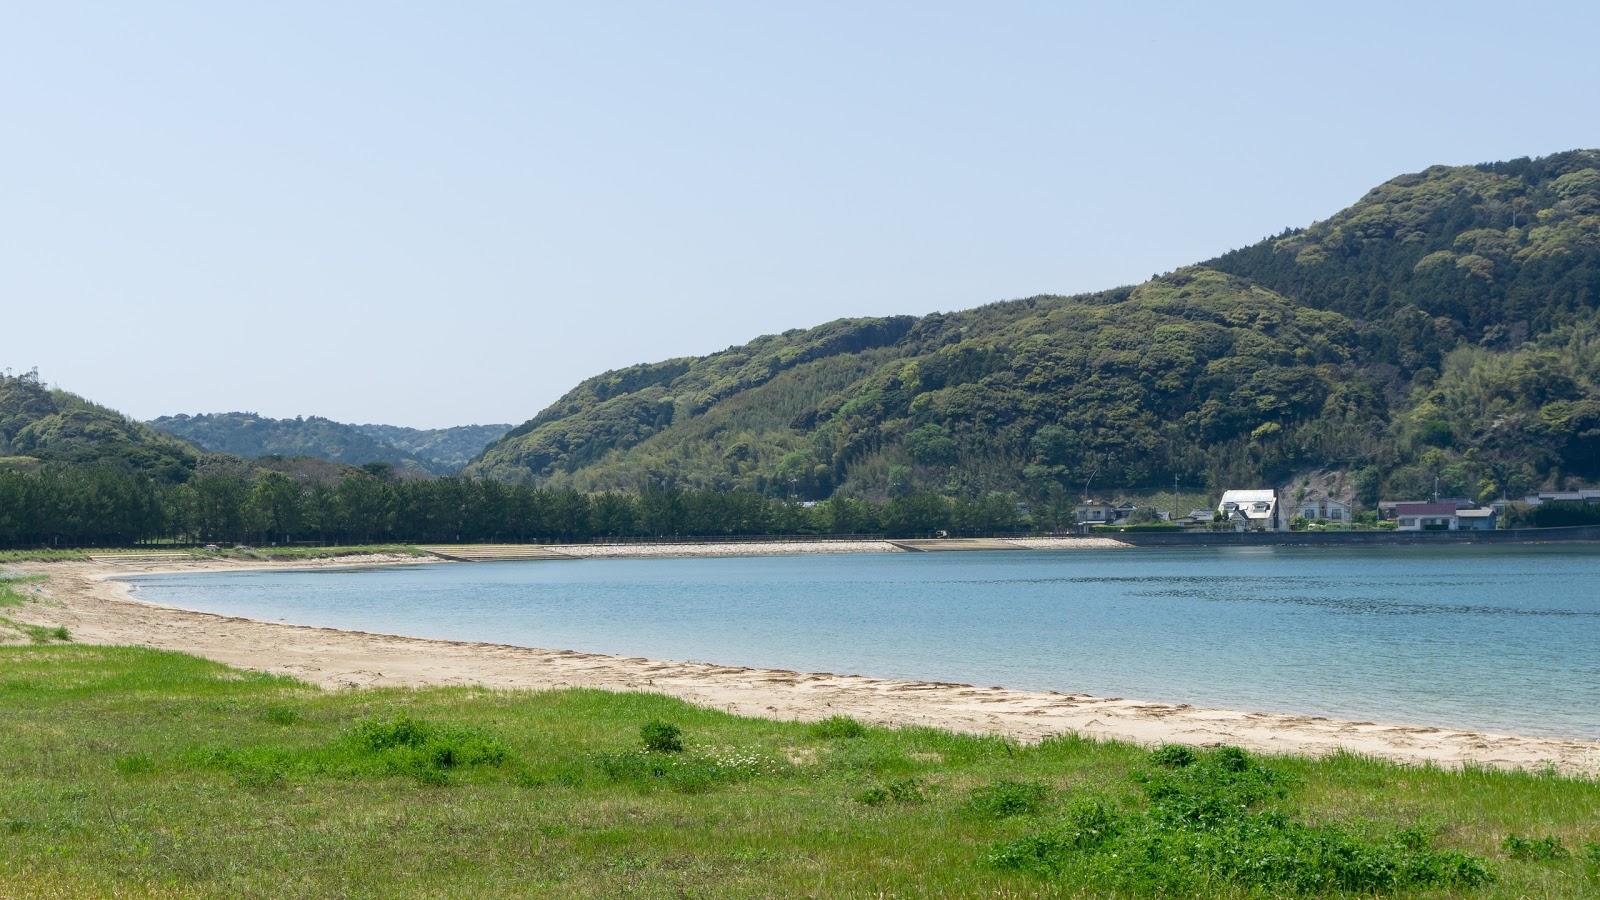 Sandee - Agawa Hosenguri Seaside Park